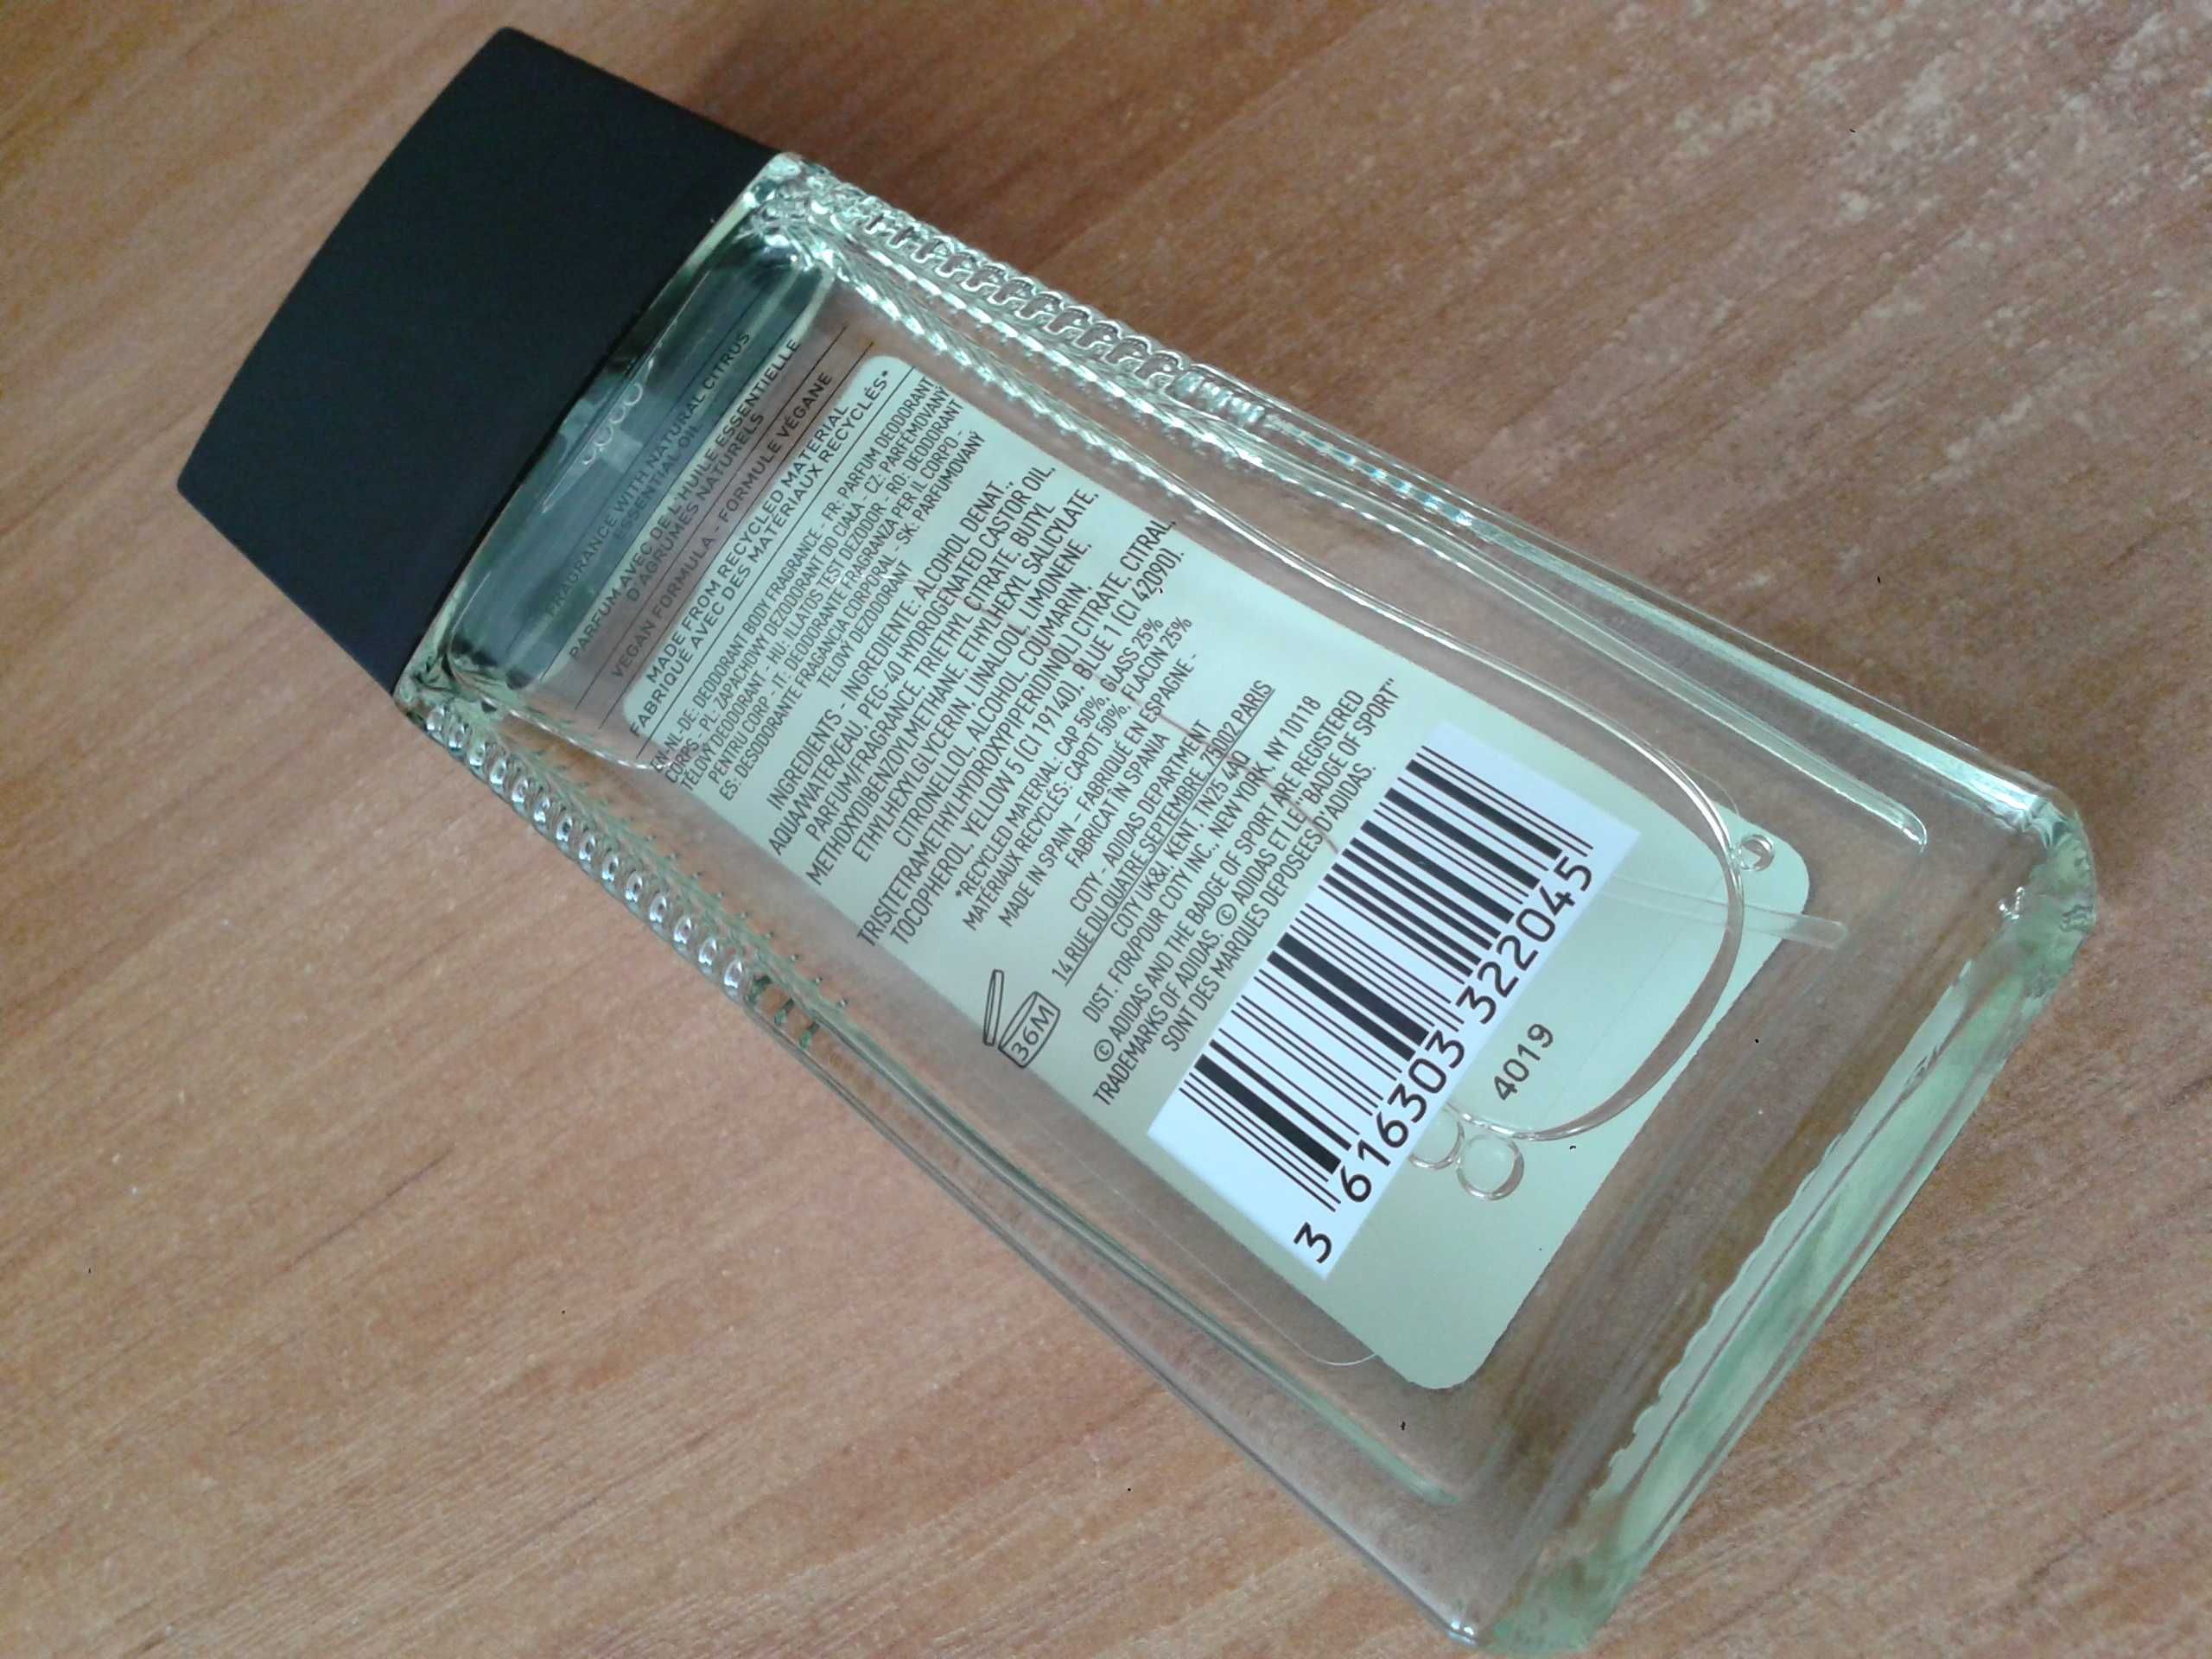 NOWY ADIDAS Pure Game dezodorant perfumowany zapachowy dla mężczyz75ml